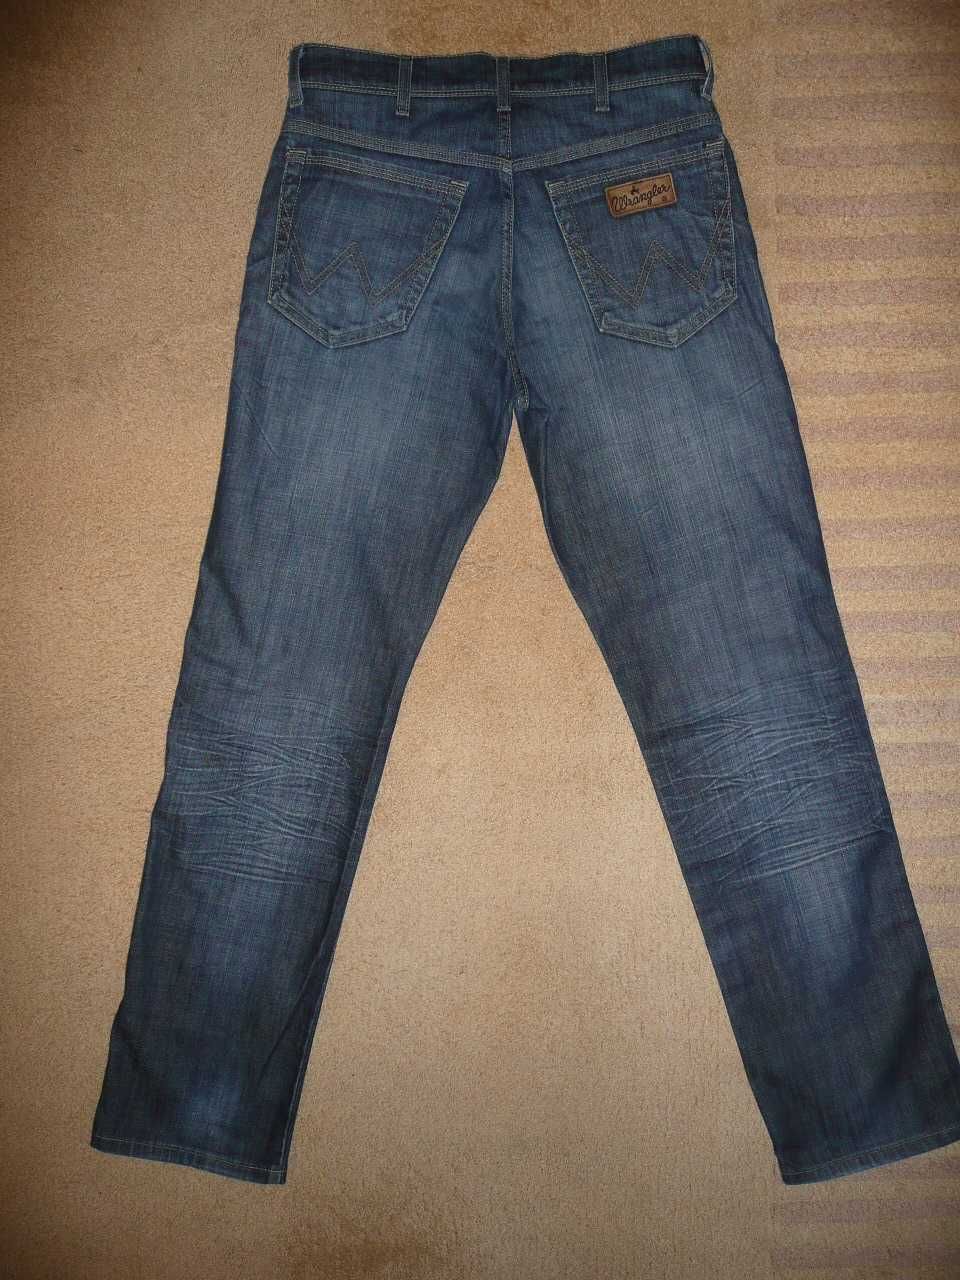 Spodnie dżinsy WRANGLER W31/L32=40,5/107cm jeansy